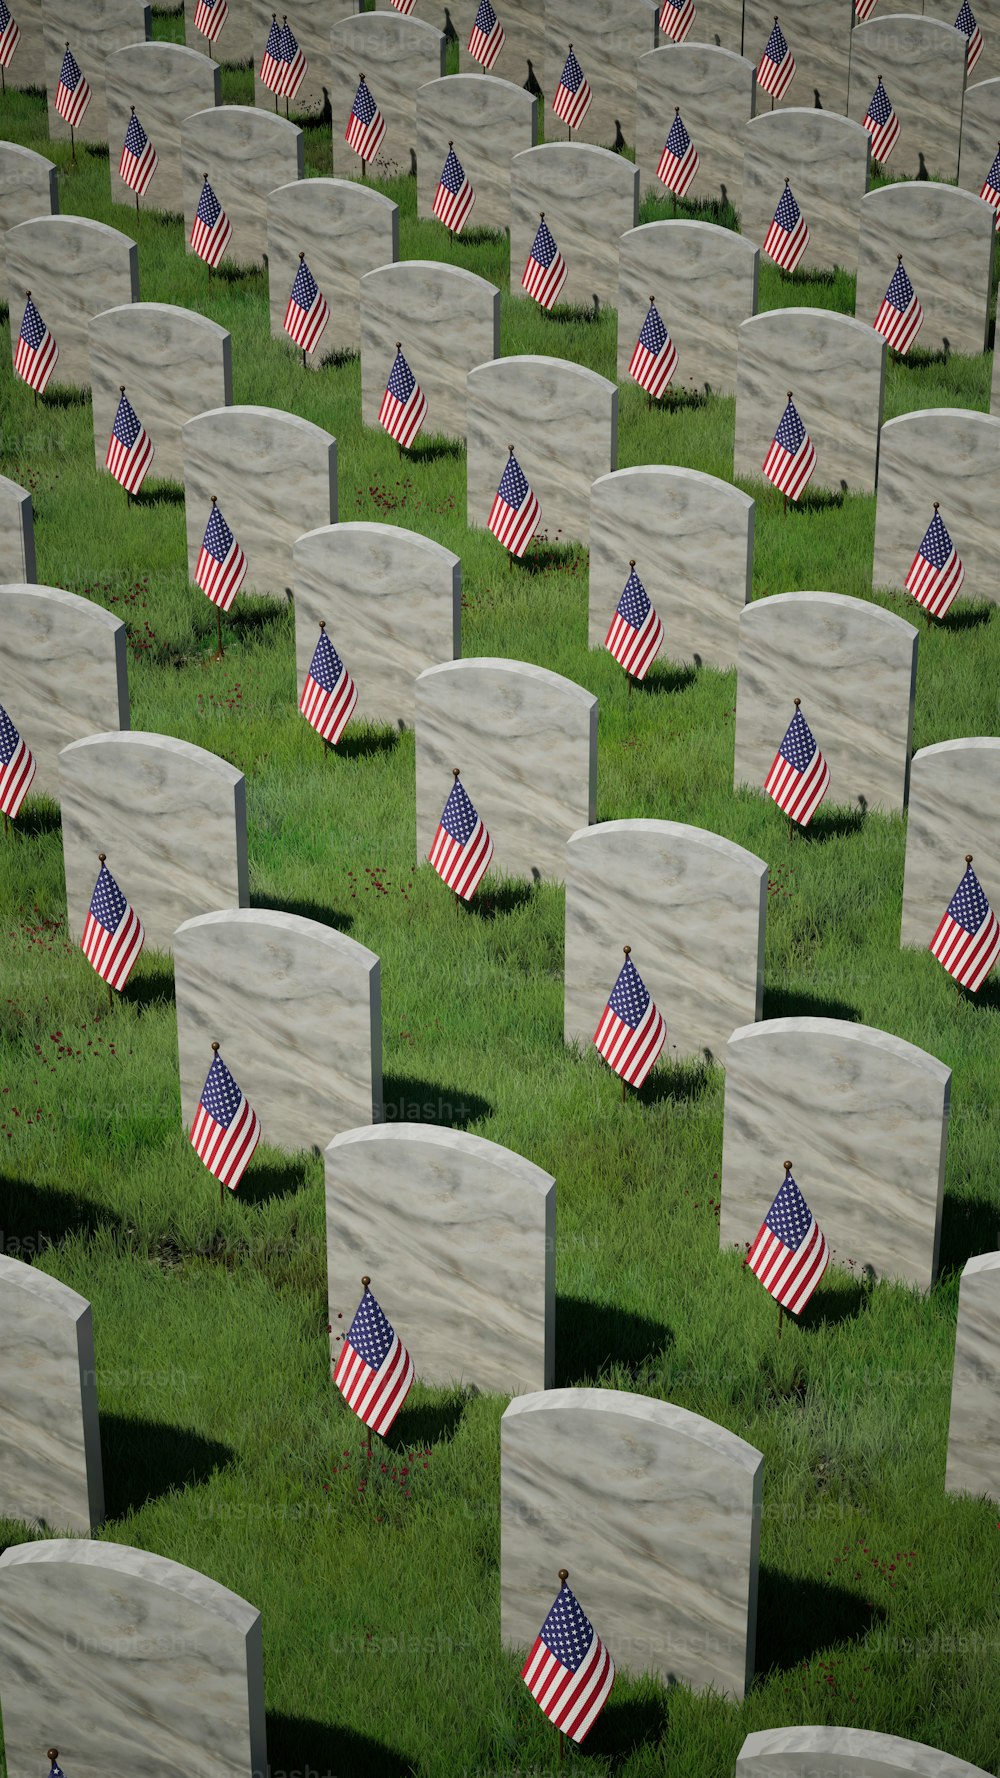 アメリカの国旗が描かれた墓石でいっぱいの野原